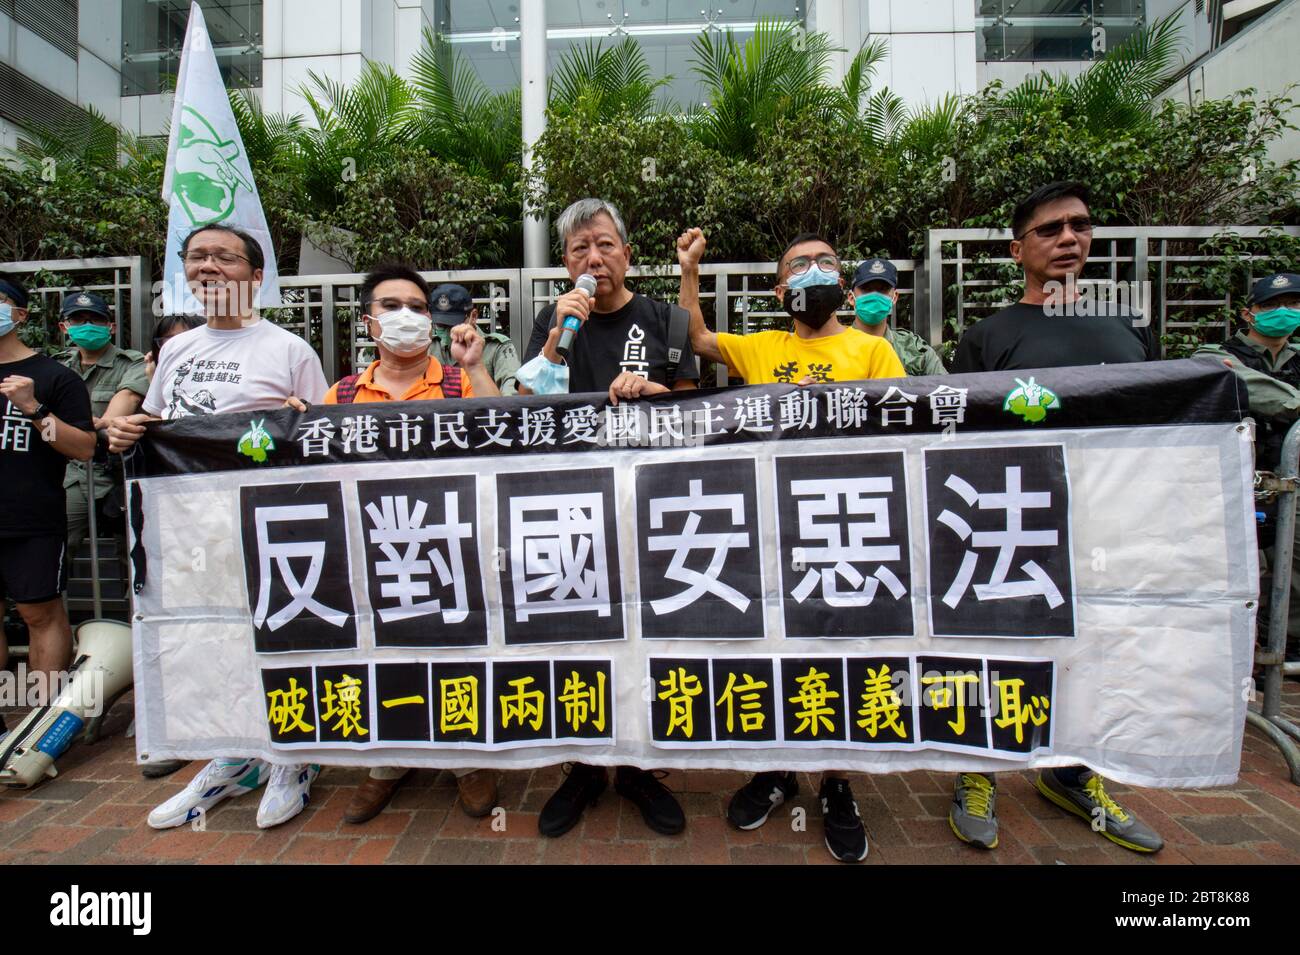 24 maggio 2020, Hong Kong, Hong Kong, Cina: Con questo anno 4 giugno è vietato l'evento, la gente partecipa a una corsa di 10 km per commemorare il 31 ° anniversario del movimento democratico 1989 in Cina che si è concluso con l'incidente di Piazza Tiananmen. La corsa assume siti di importanza per la lotta per la democrazia a Hong Kong.LEE CHEUK-YAN (c), ex legislatore e uno dei '15 emocrazia arrestati', parla al di fuori dell'Ufficio di collegamento del governo del popolo centrale a Hong Kong SAR, Sai Yin Pun. Il compagno 'Democry 15'' arrestee, Richard Tsoi si unisce a lui (immagine di credito: © Jayne Russell/ZUMA Wire) Foto Stock